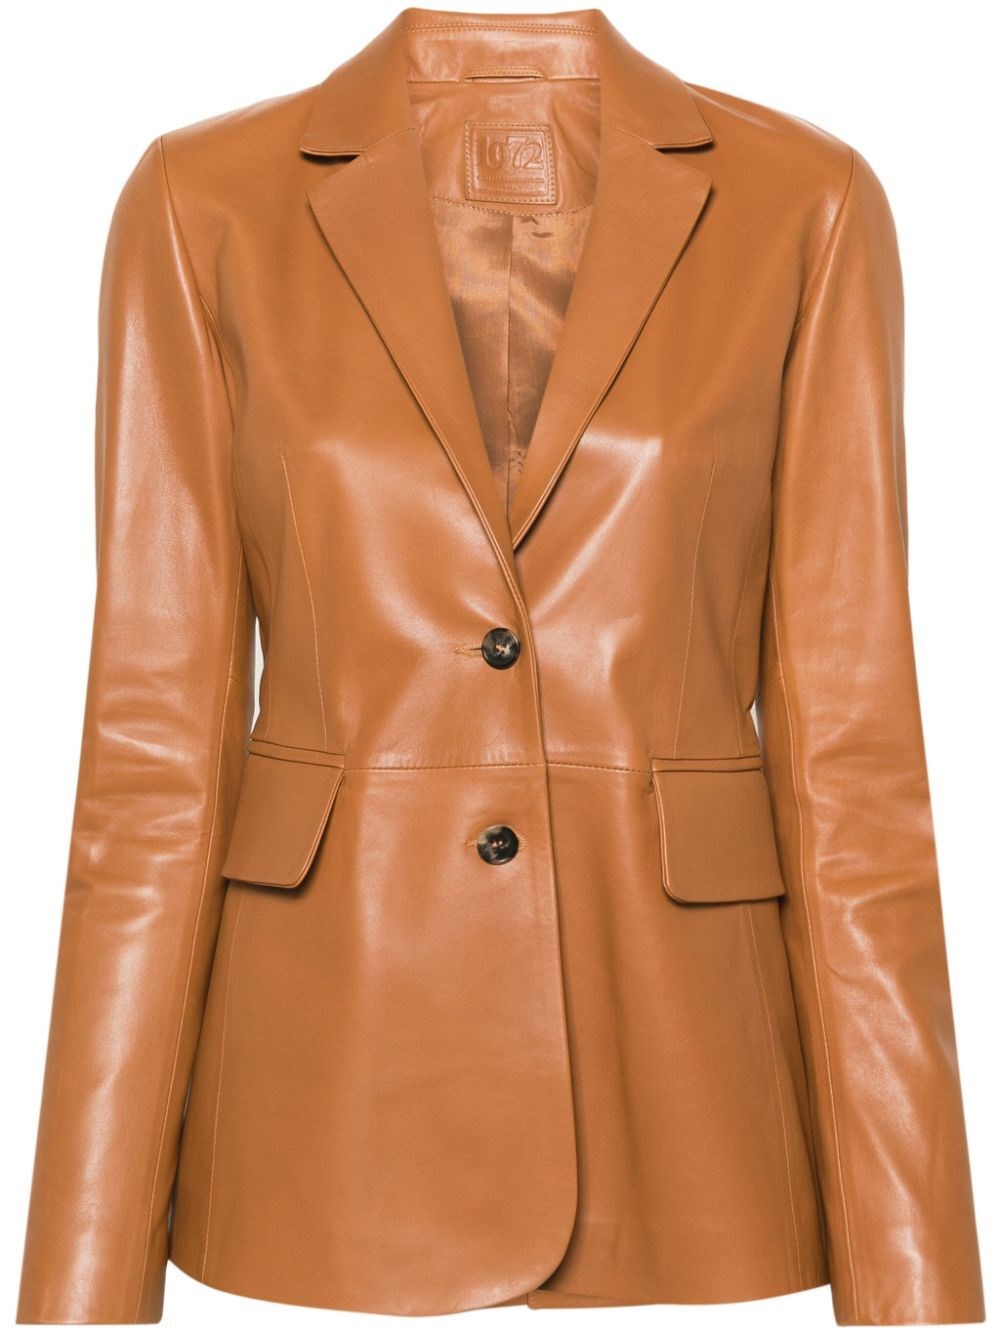 Desa 1972 Leather Blazer Jacket In Brown